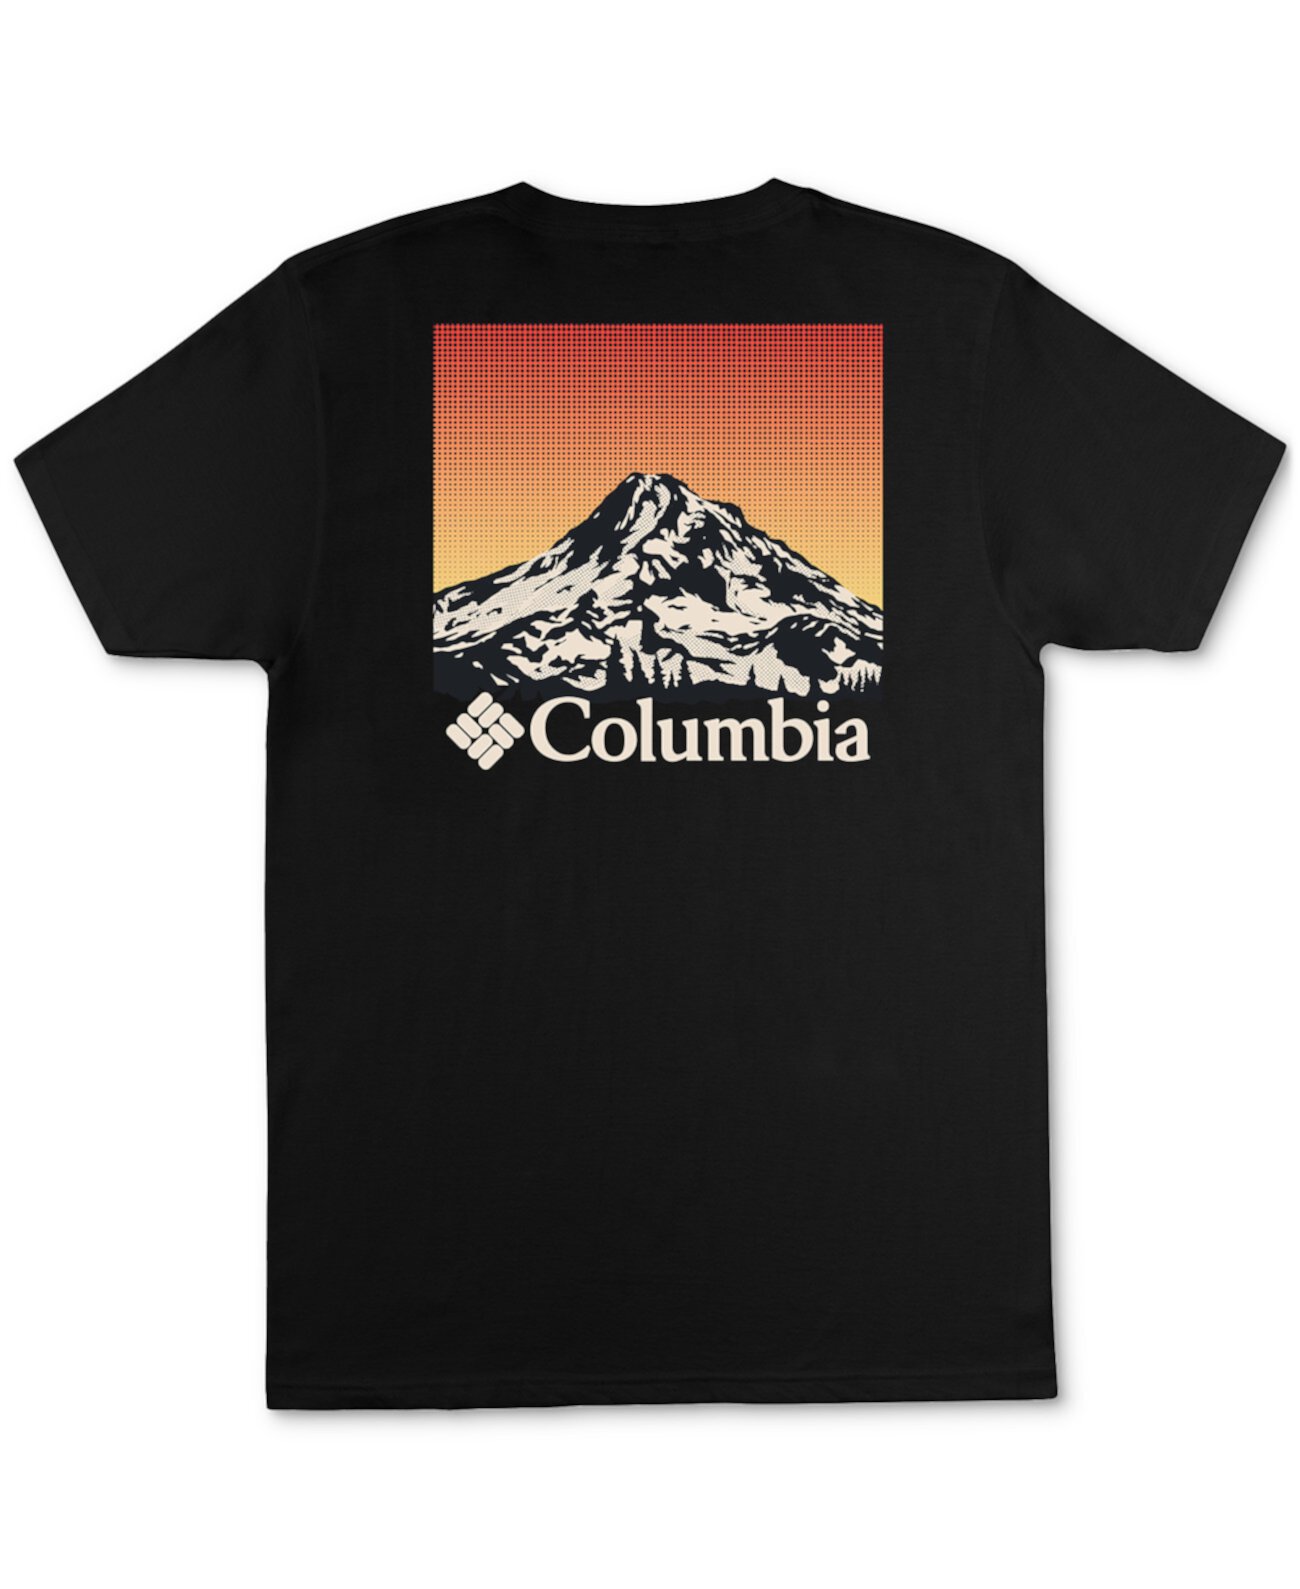 Мужская футболка с рисунком Peak Columbia